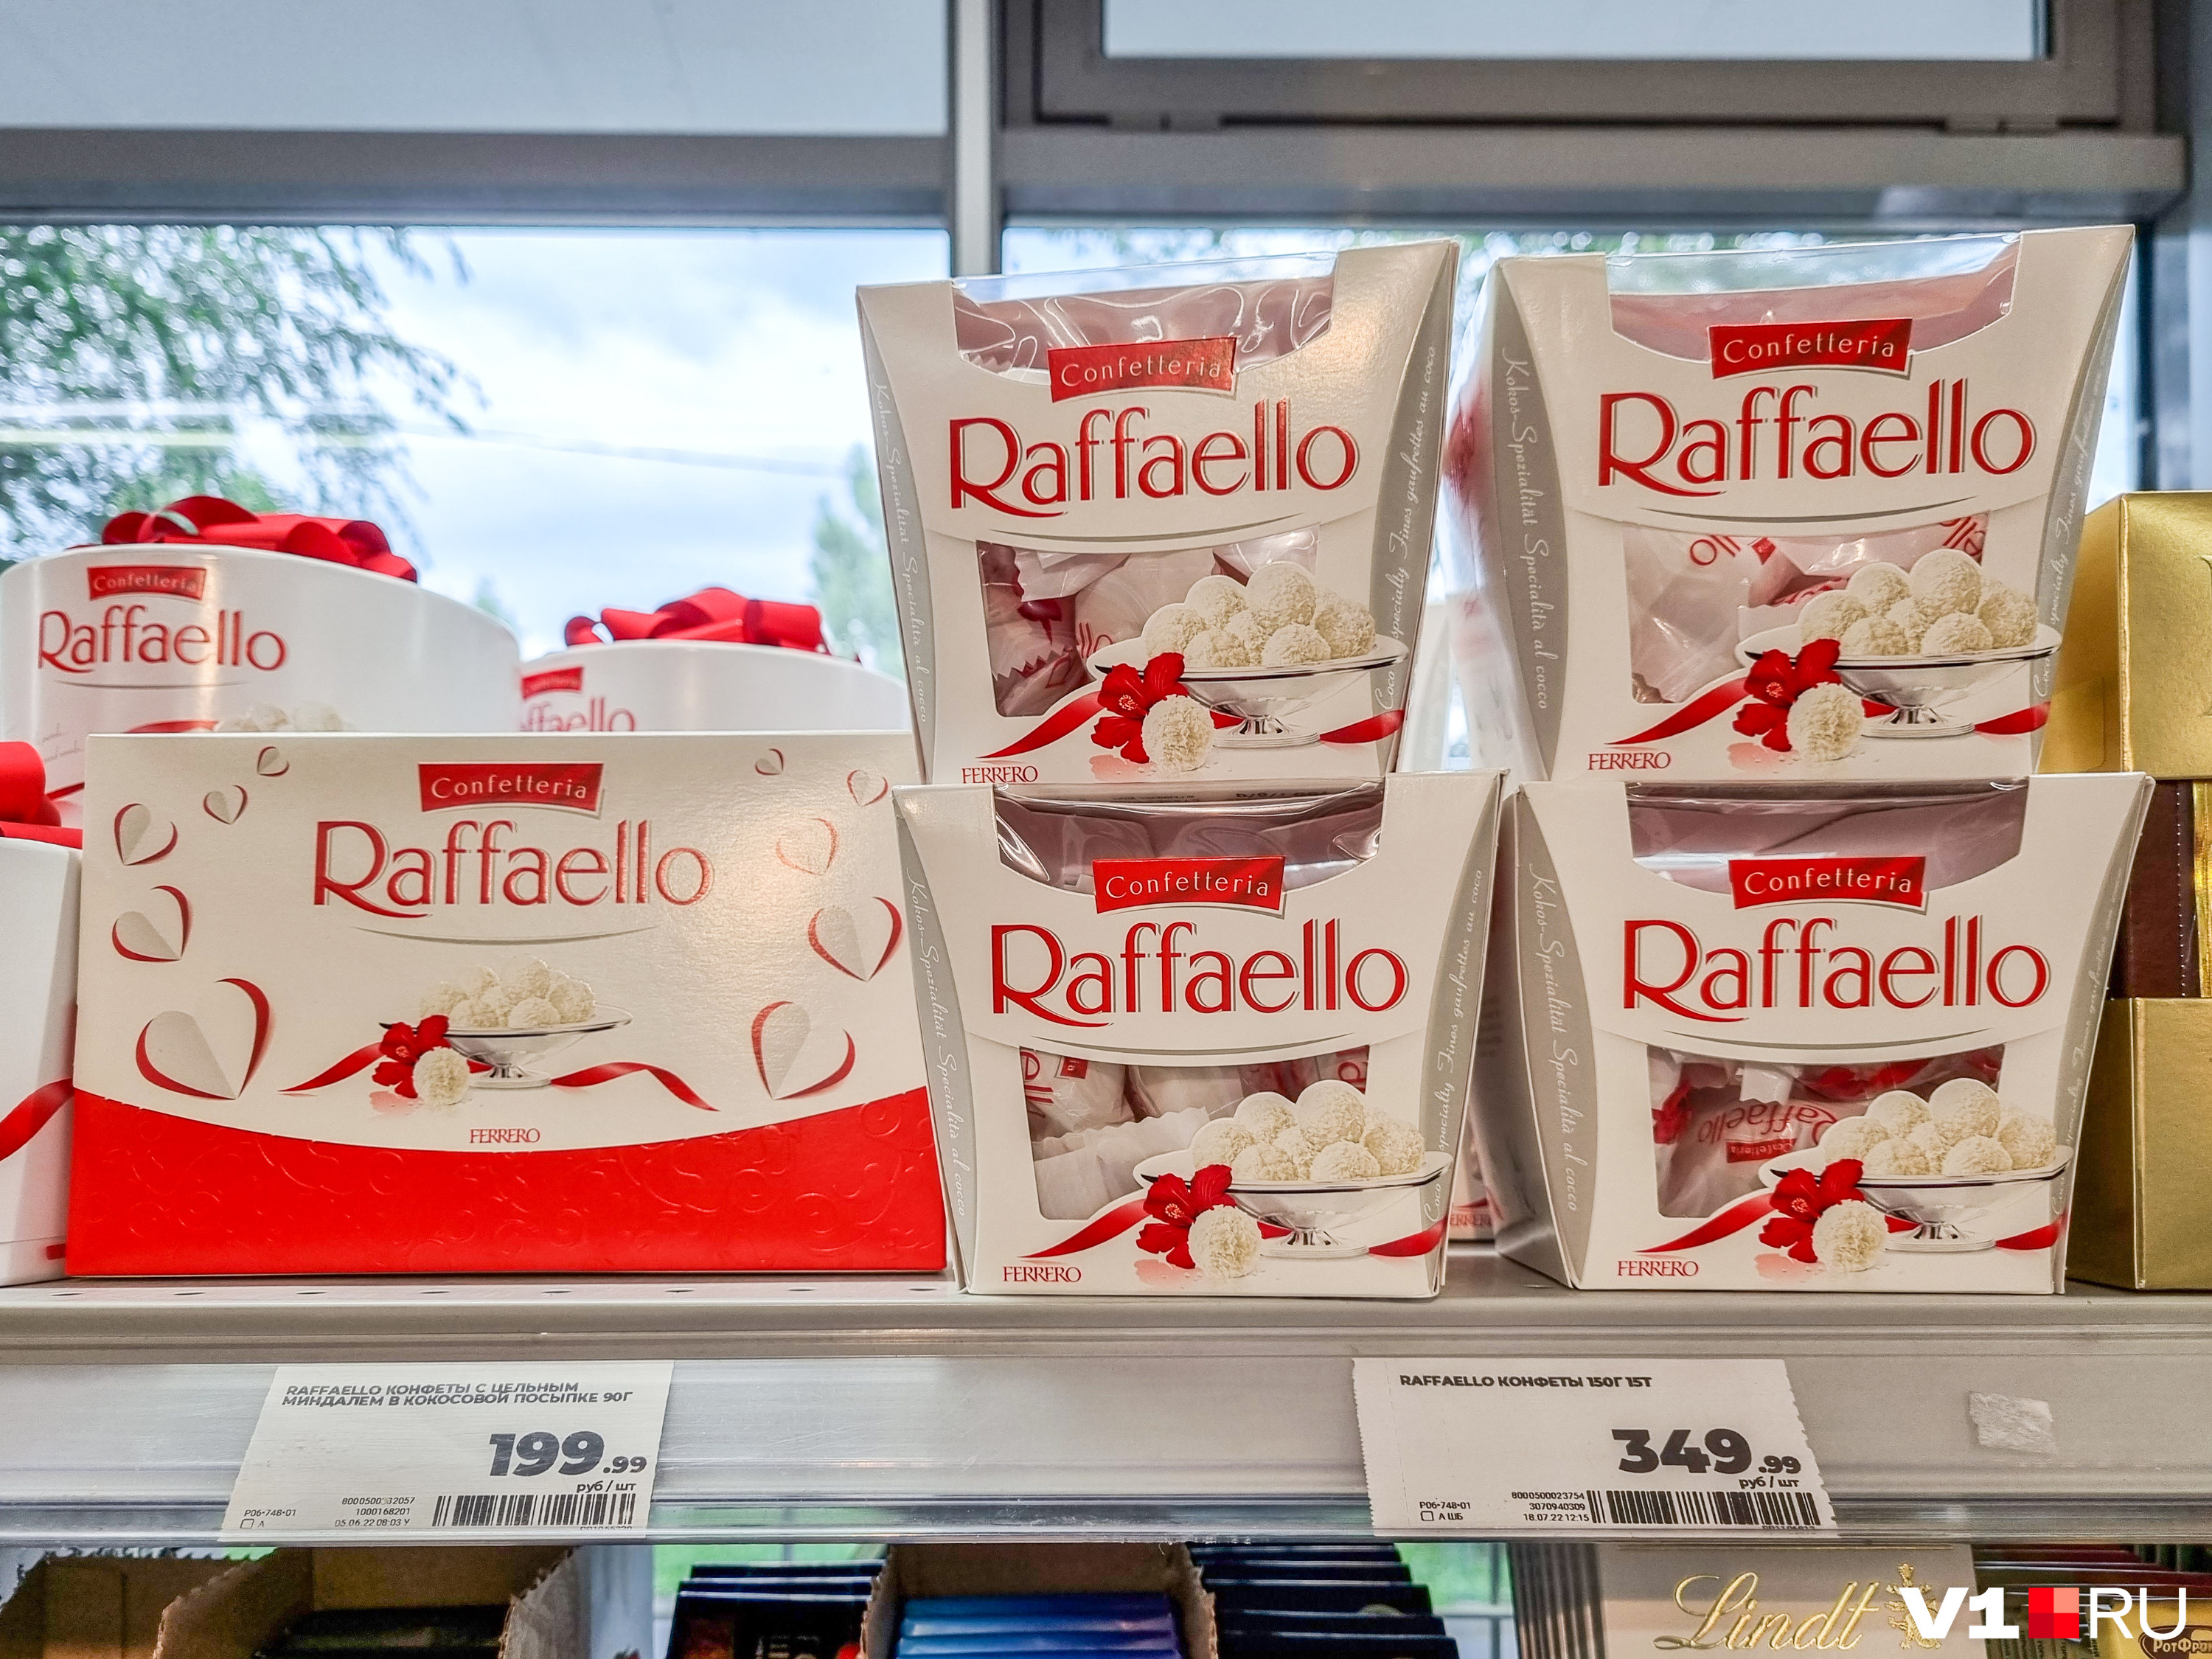 Raffaello уже давно позиционировался не только как лакомство, но и как подарок для женщин